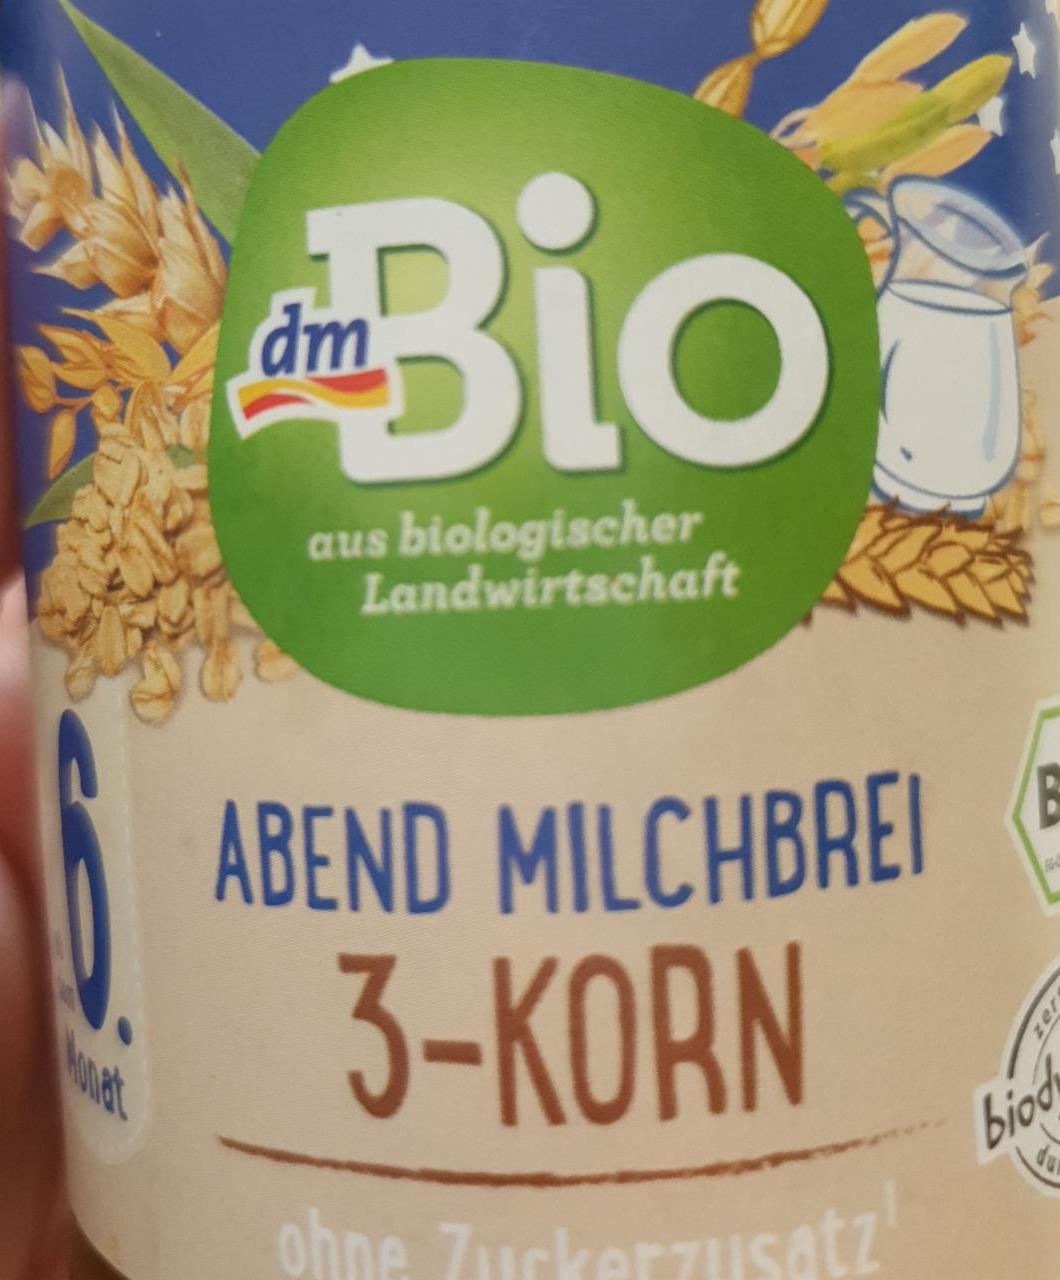 Fotografie - Abend Milchbrei 3-Korn ohne Zuckerzusatz dmBio